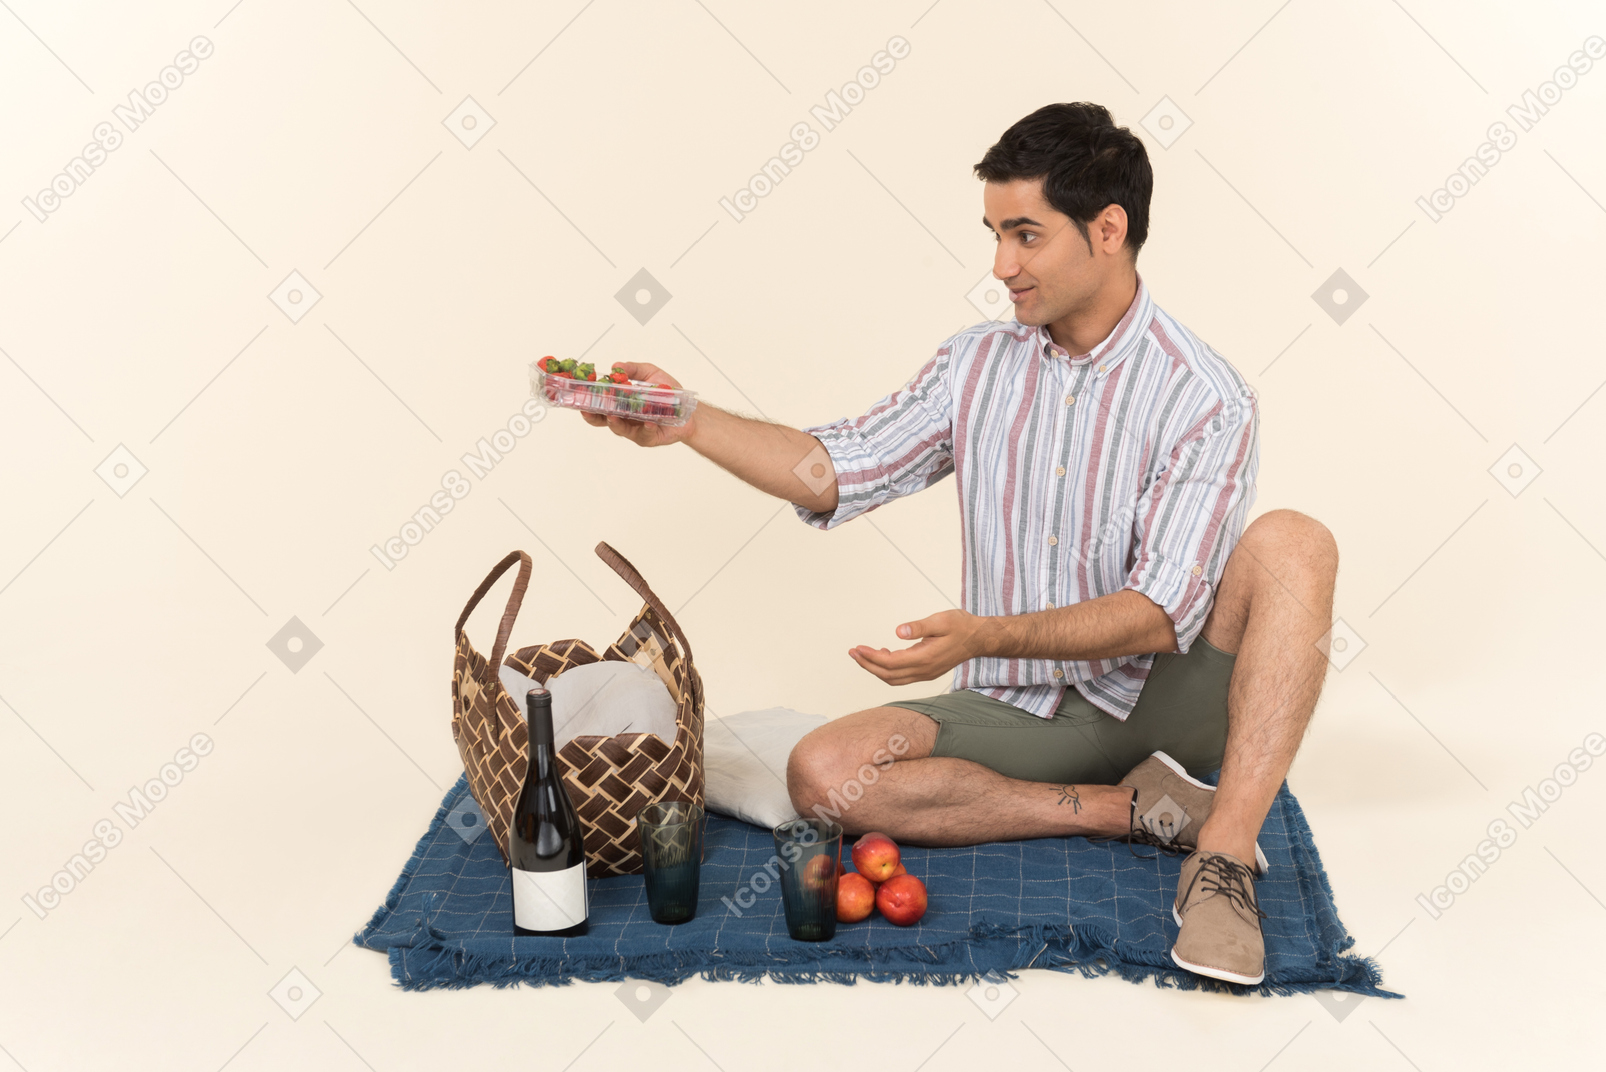 Jeune homme caucasien assis sur la couverture et tenant des fruits